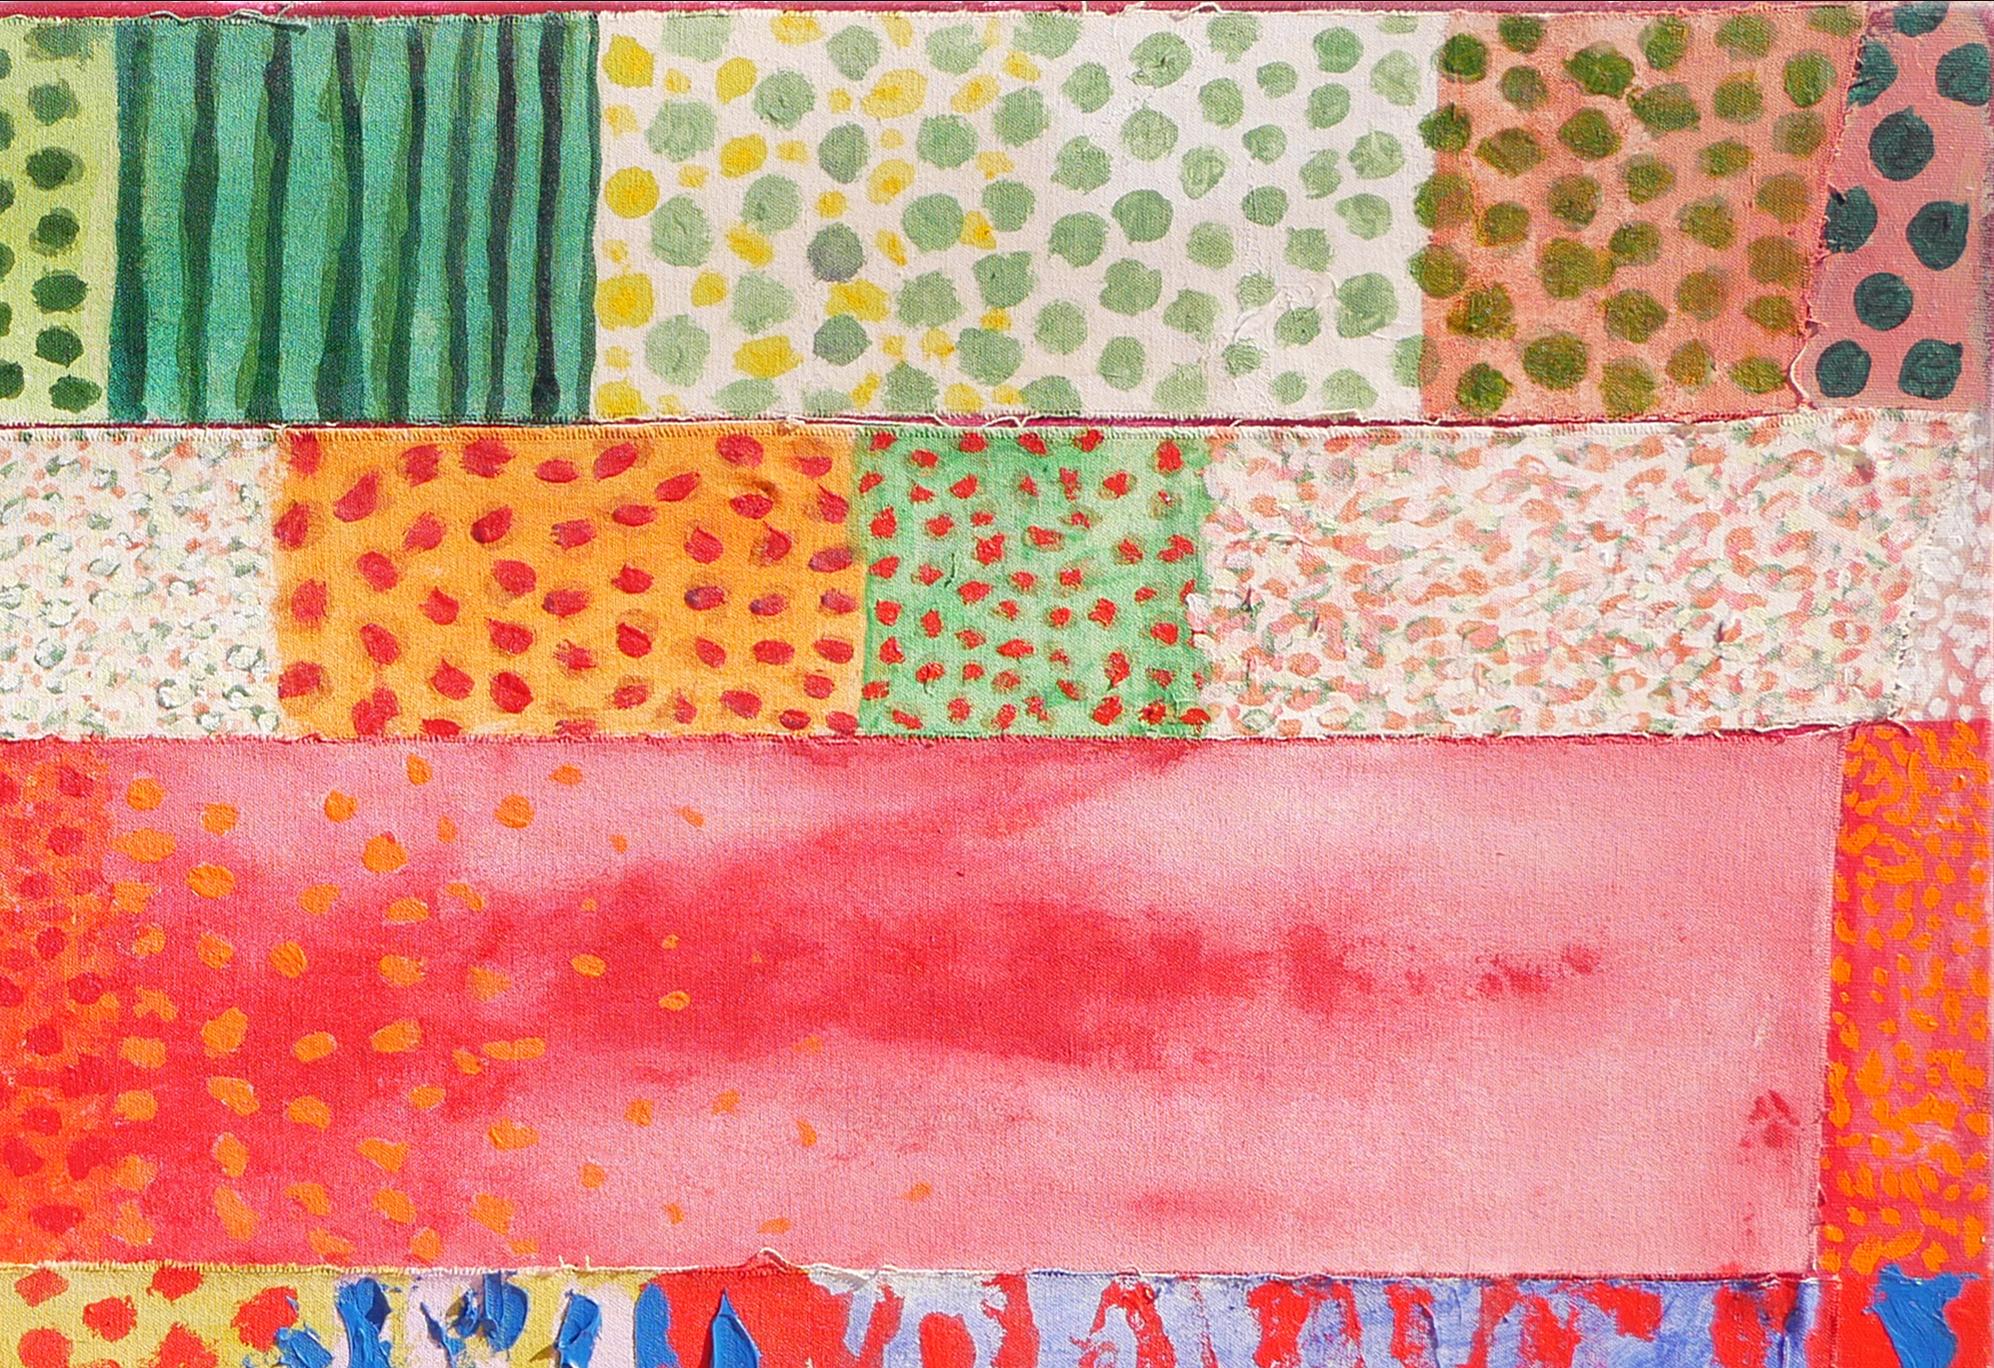 Peinture abstraite géométrique rouge, orange, rose, verte, jaune et violette de l'artiste Early Staley de Houston, TX. Cette peinture géométrique ressemblant à une courtepointe présente une série de petites toiles peintes avec différentes couleurs